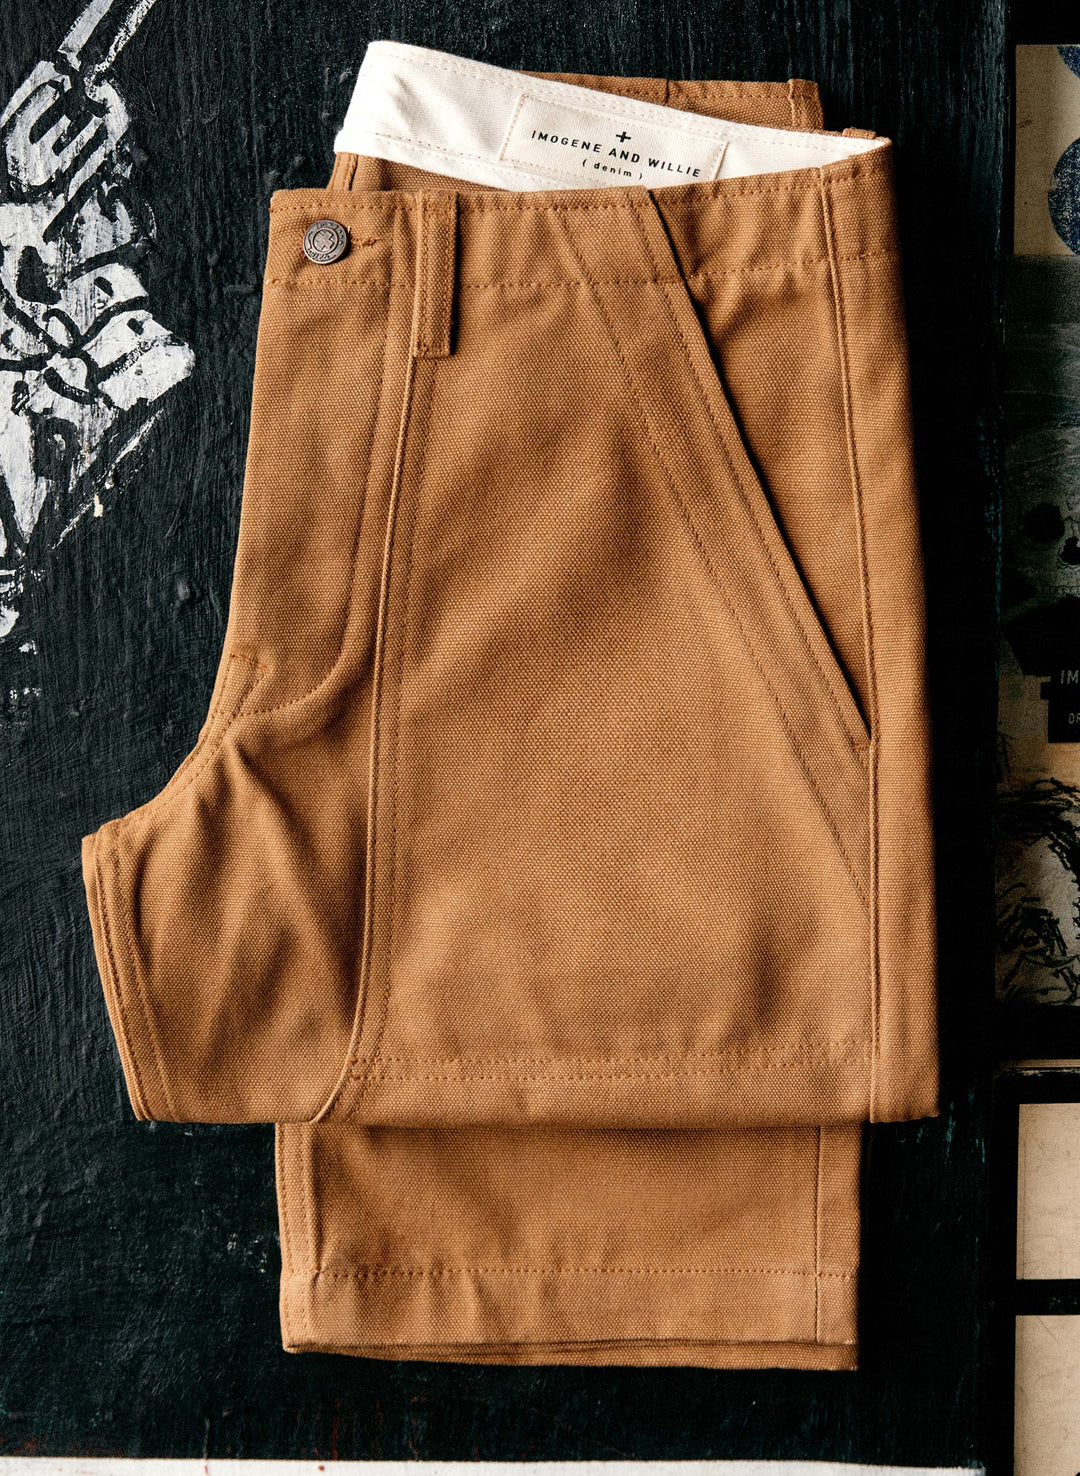 a pair of brown pants